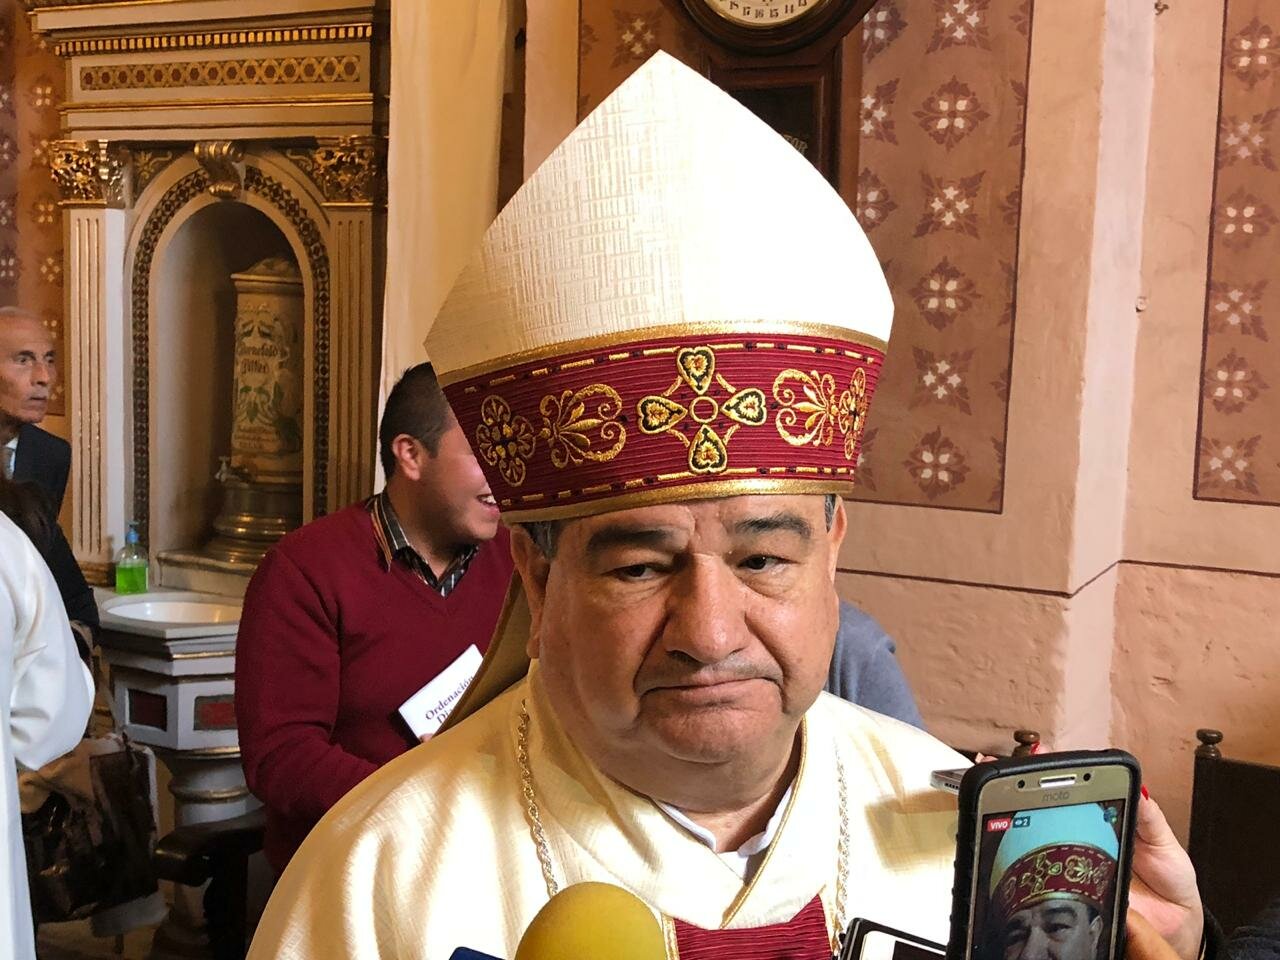 Continúan enfrentamientos entre grupos delincuenciales: arzobispo